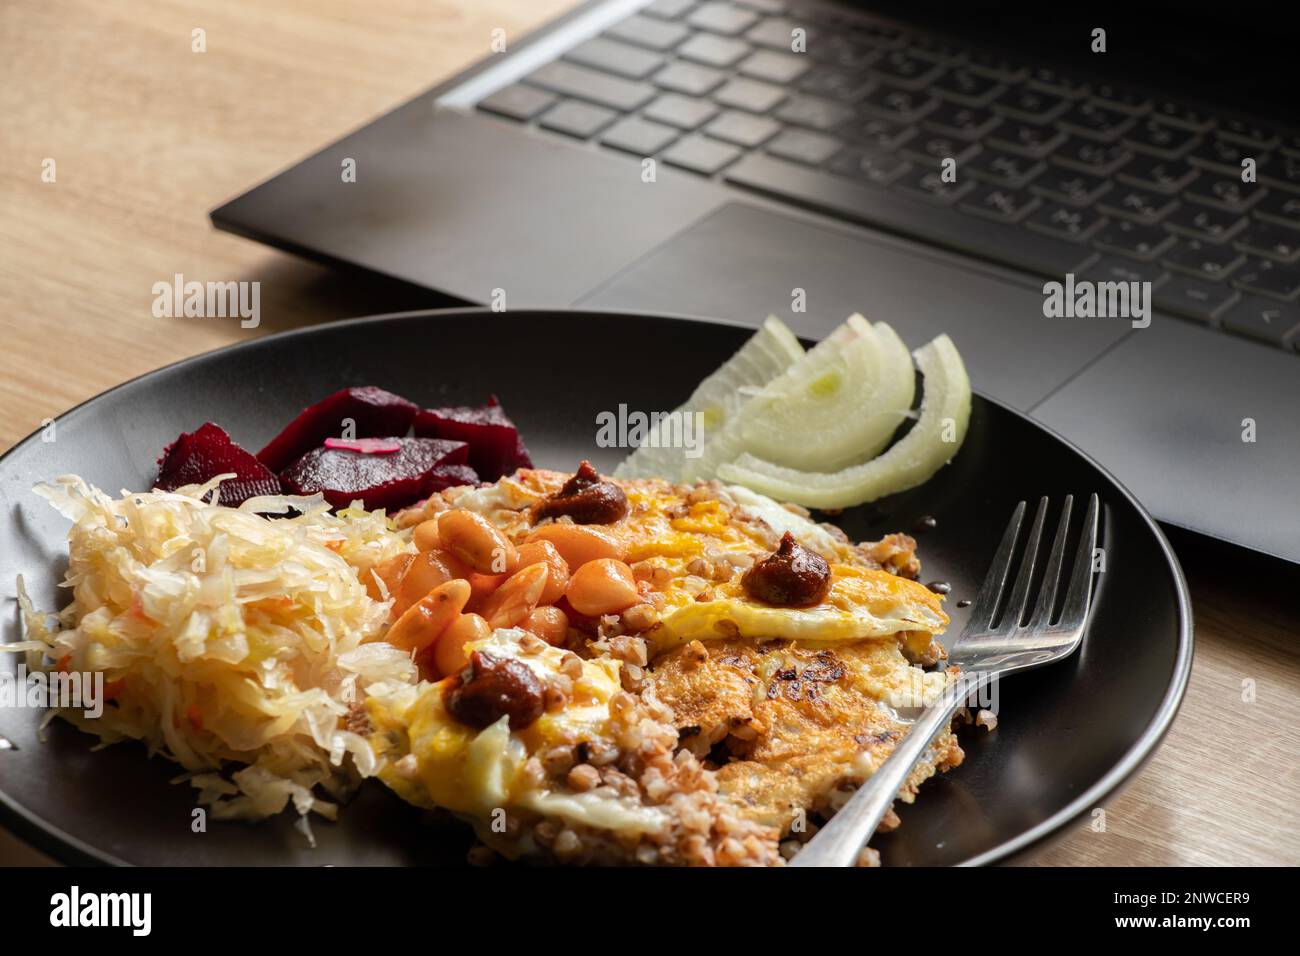 œufs brouillés avec des légumes dans une assiette noire près d'un ordinateur portable à une table sur un robta, déjeuner sur le lieu de travail, une assiette de nourriture sur le lieu de travail Banque D'Images